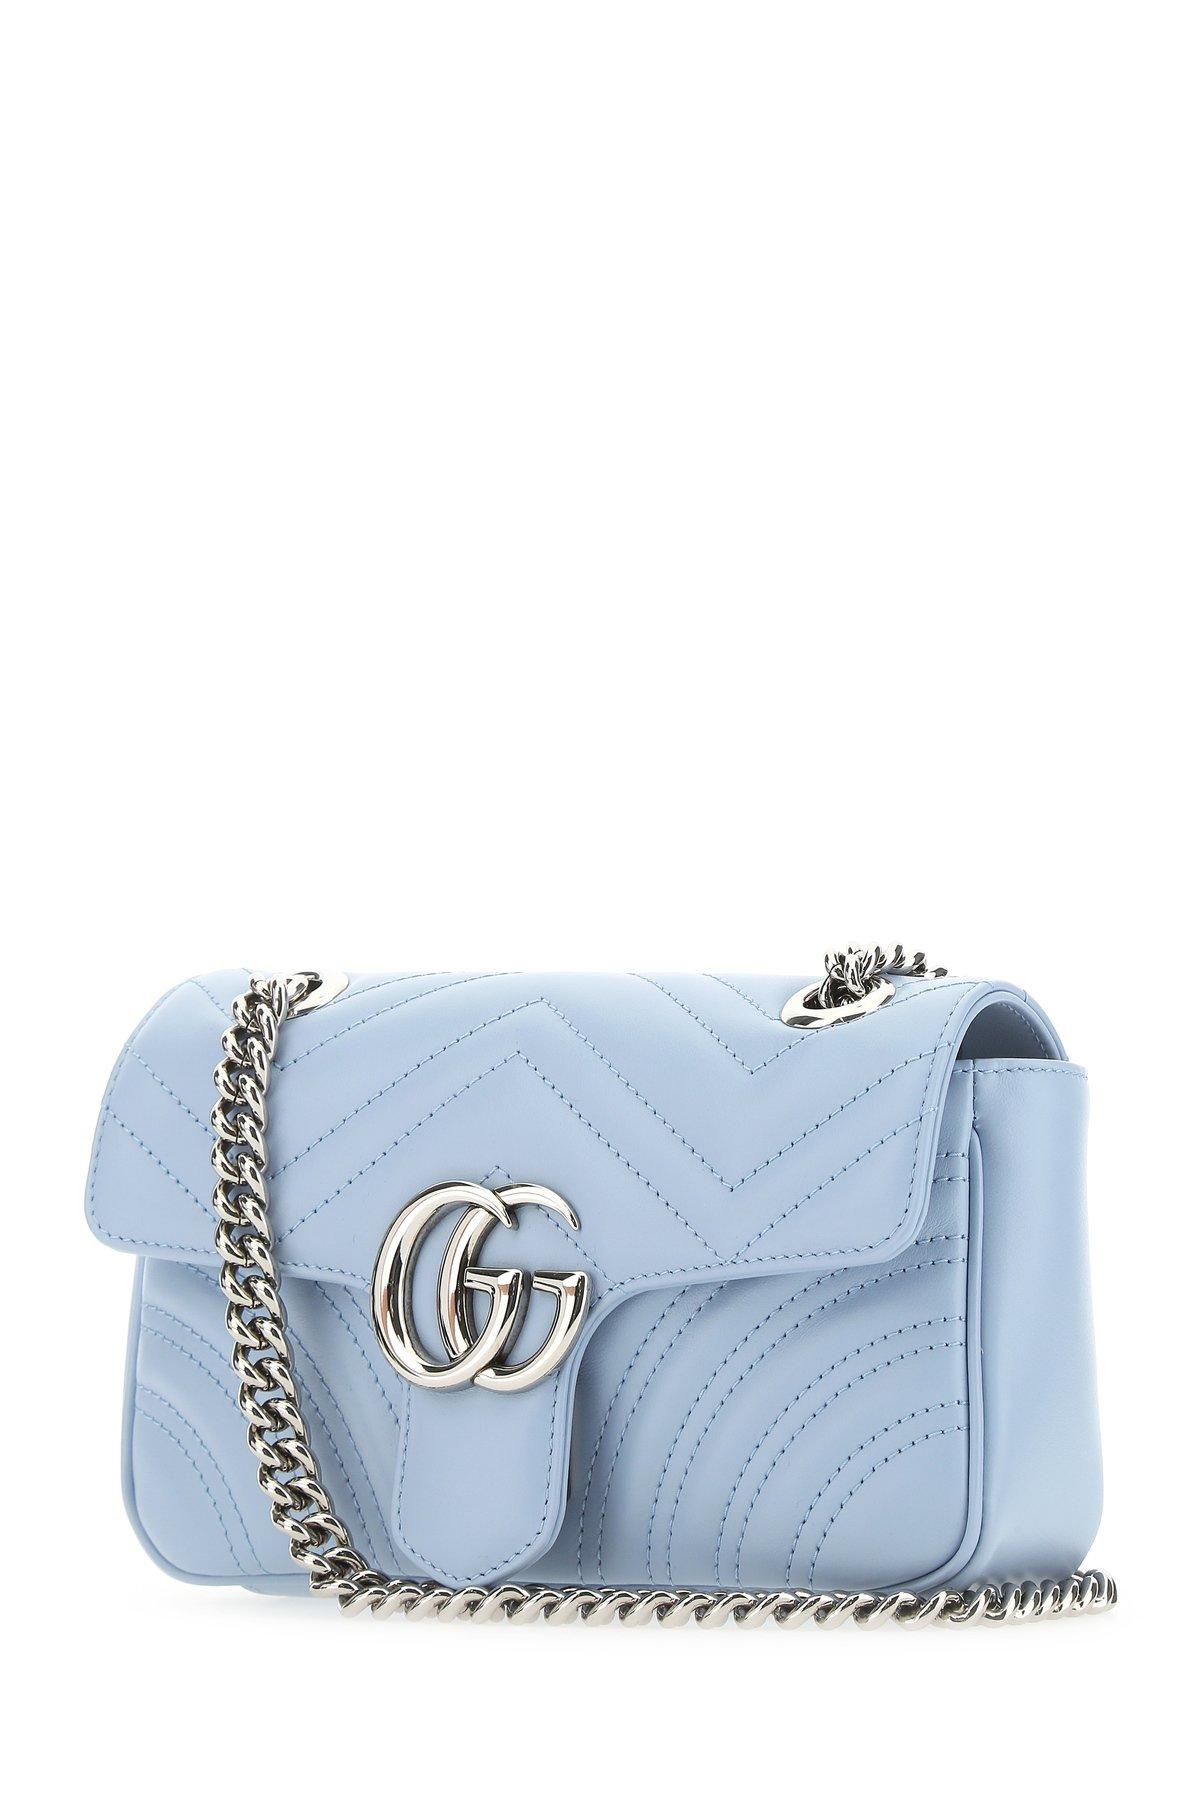 Voir les Mini sac à main GG Marmont Gucci. Décliné dans un ton bleu clair,  le mini sac à main GG Marmont présente une …